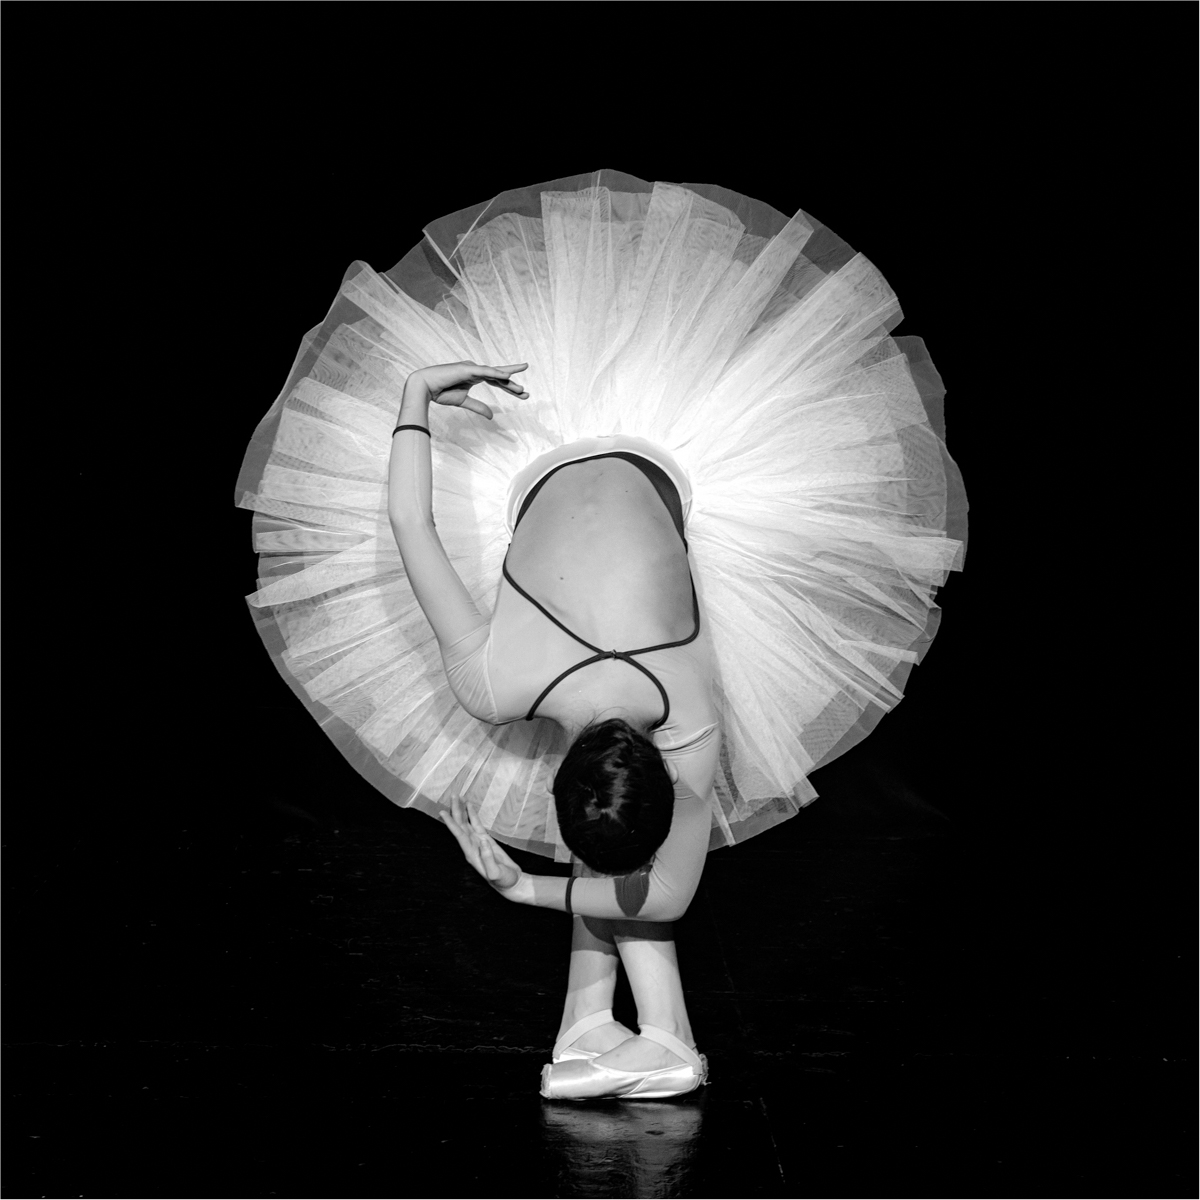 Swan salute by Vincent Cochain, EPSA